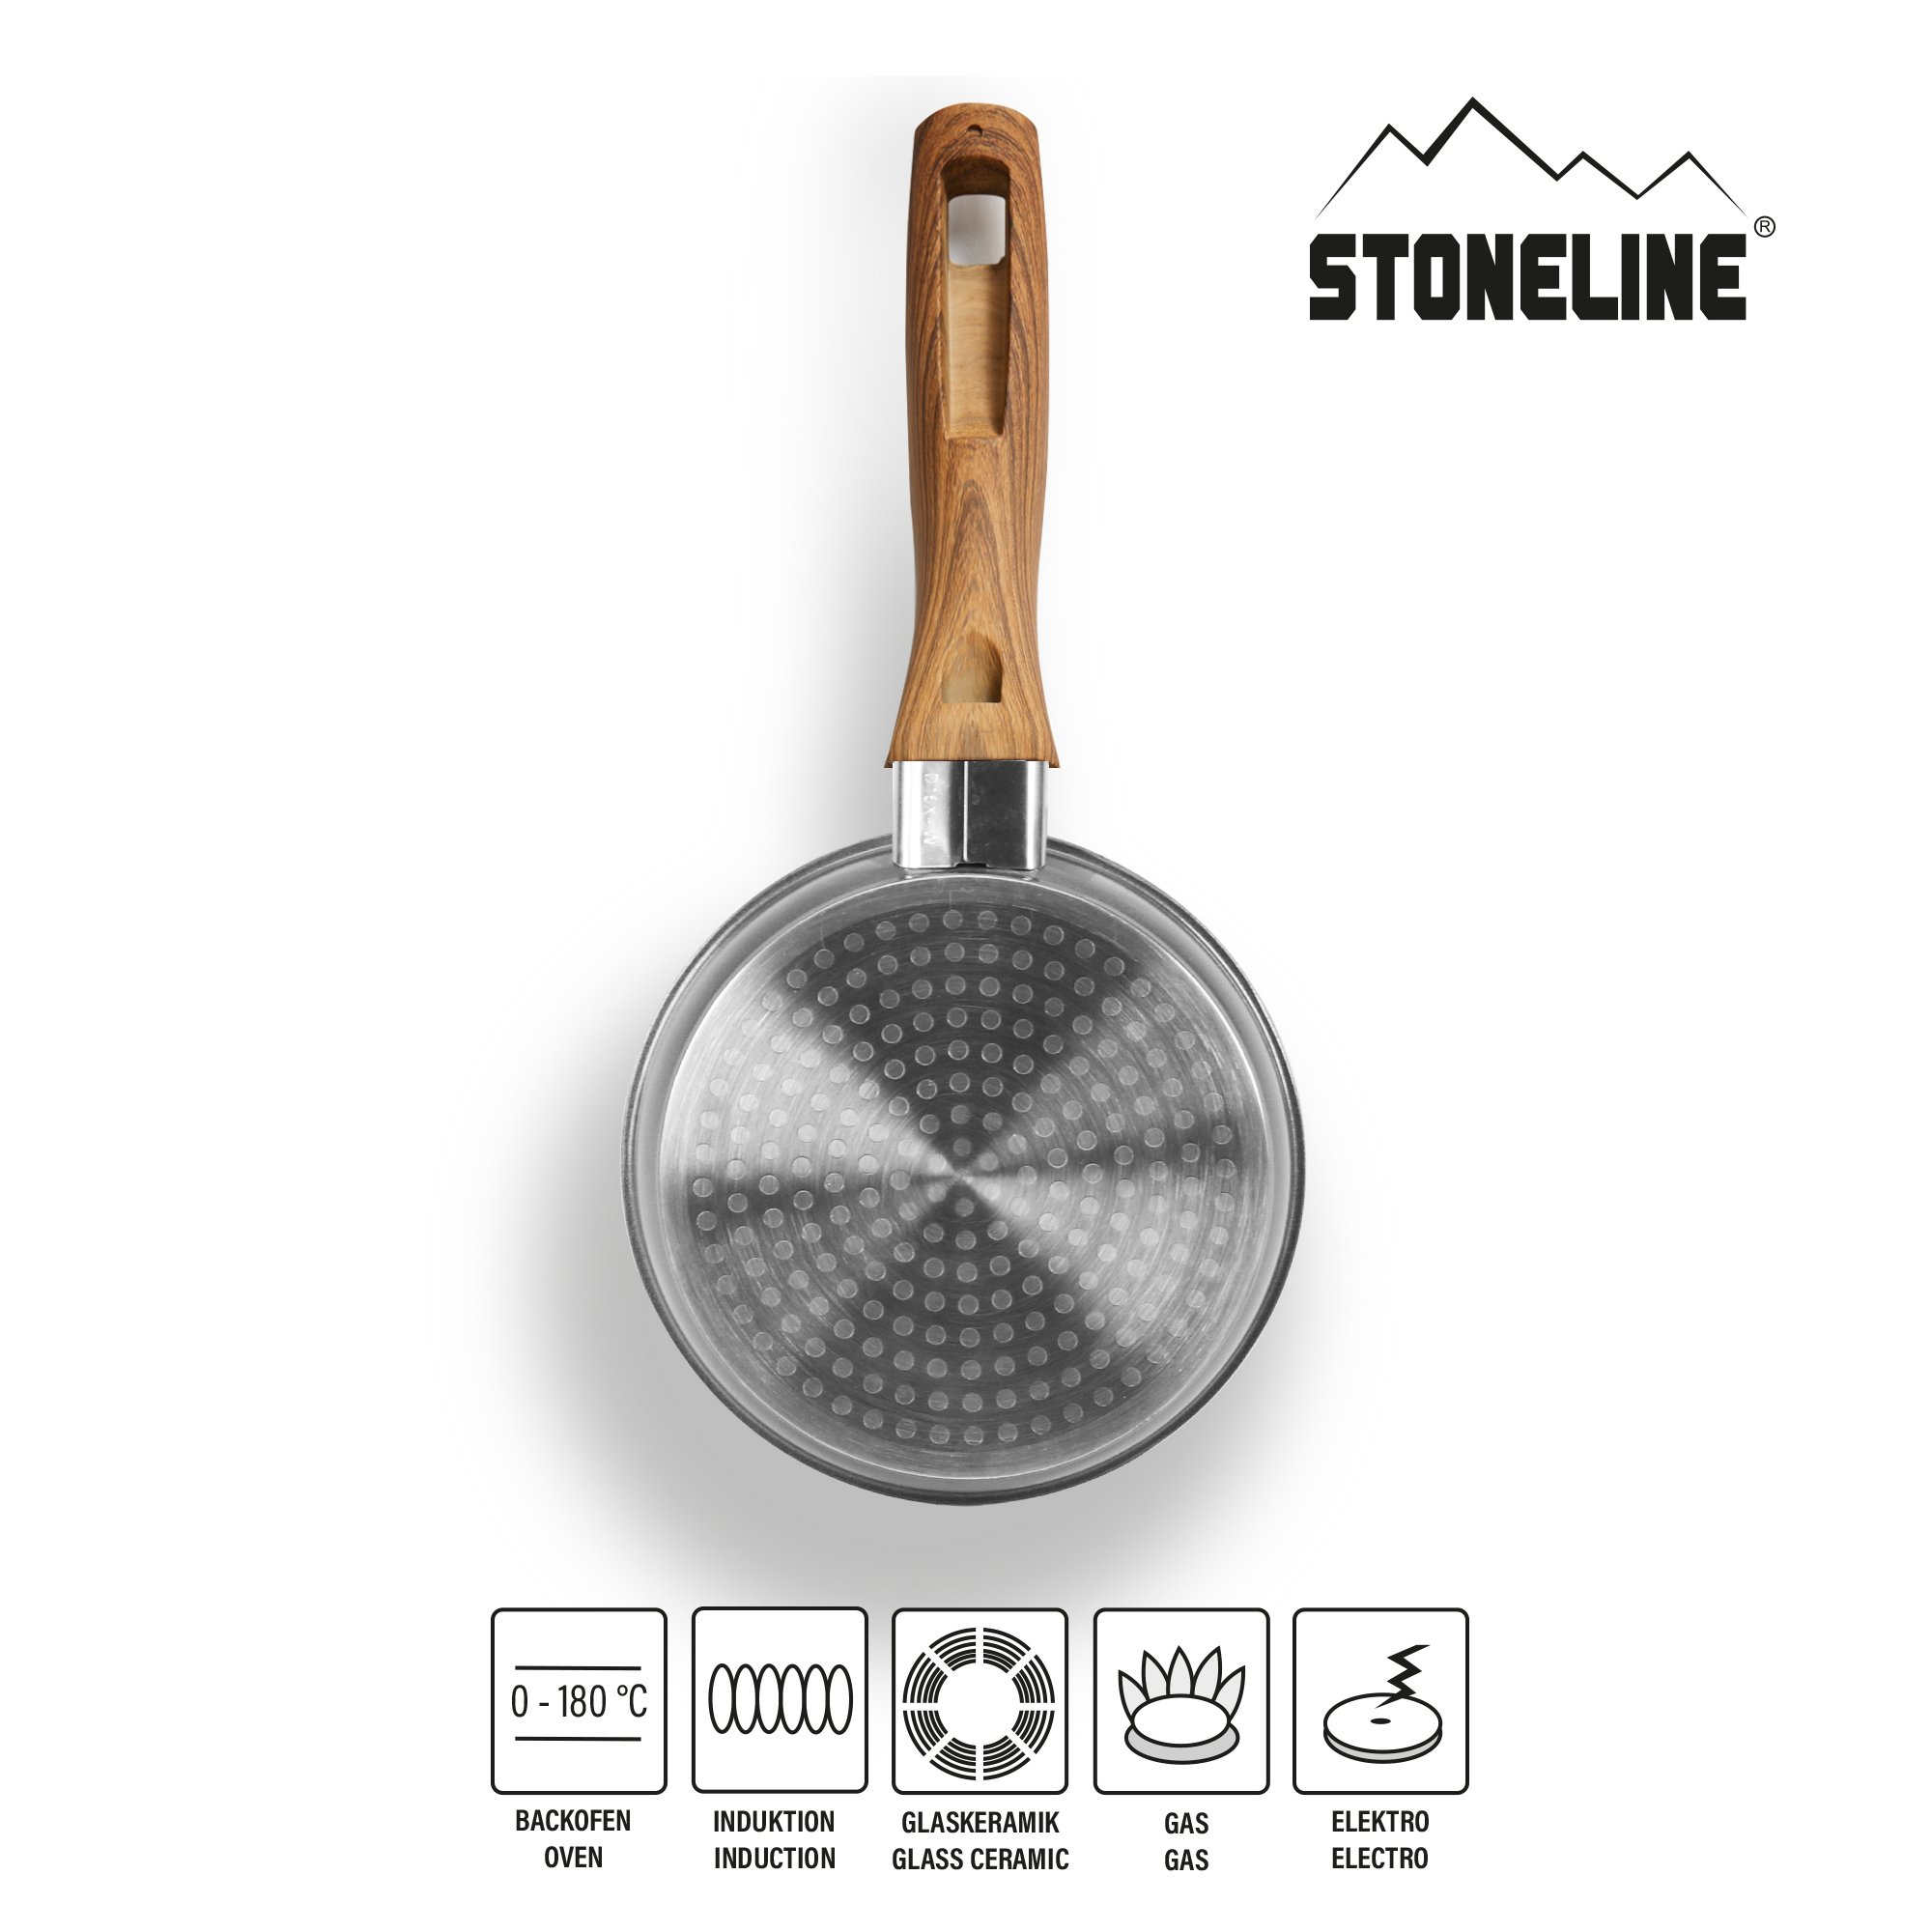 STONELINE® Back to Nature padella 14 cm, padella per omelette antiaderente, adatta all'induzione